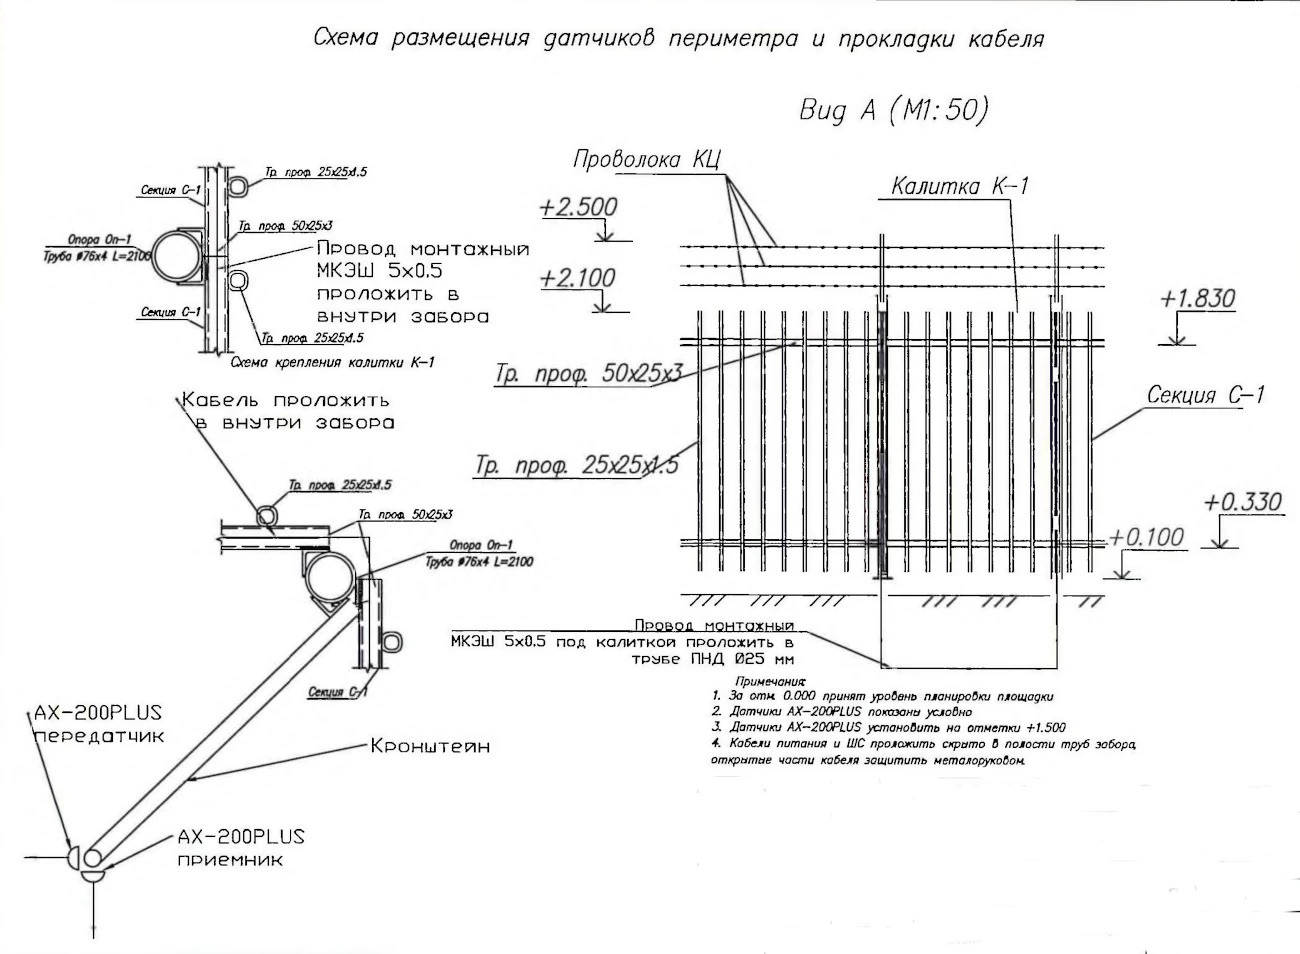 Схема размещения датчиков периметра и прокладки кабеля